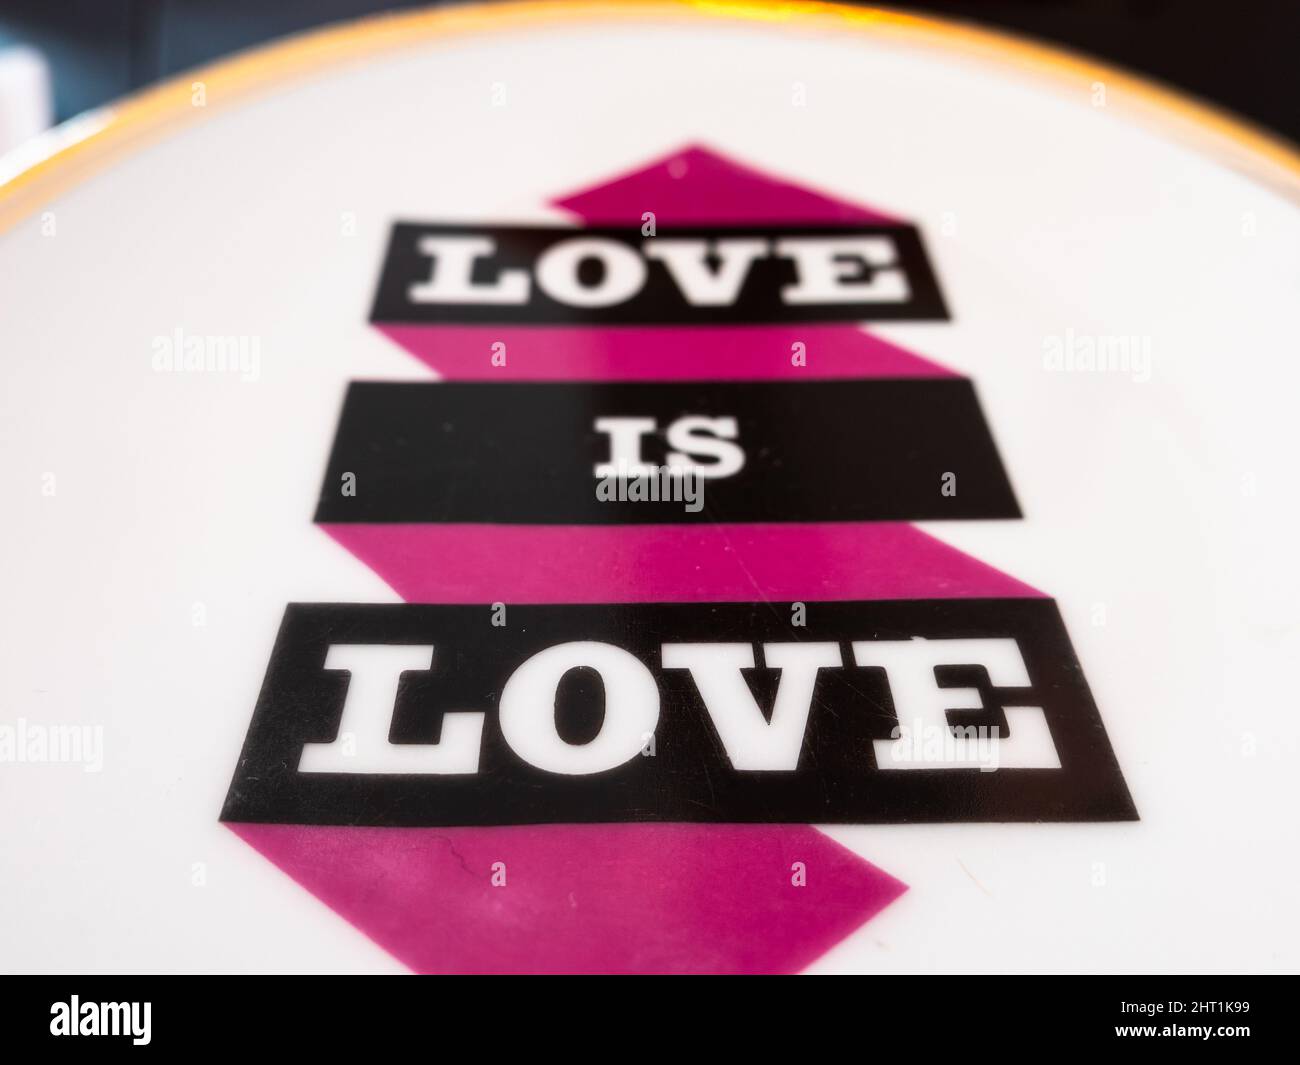 Locarno, Svizzera - 29 dicembre 2021: Iscrizione decorativa l'amore è amore sulla piastra di ceramica. Foto Stock